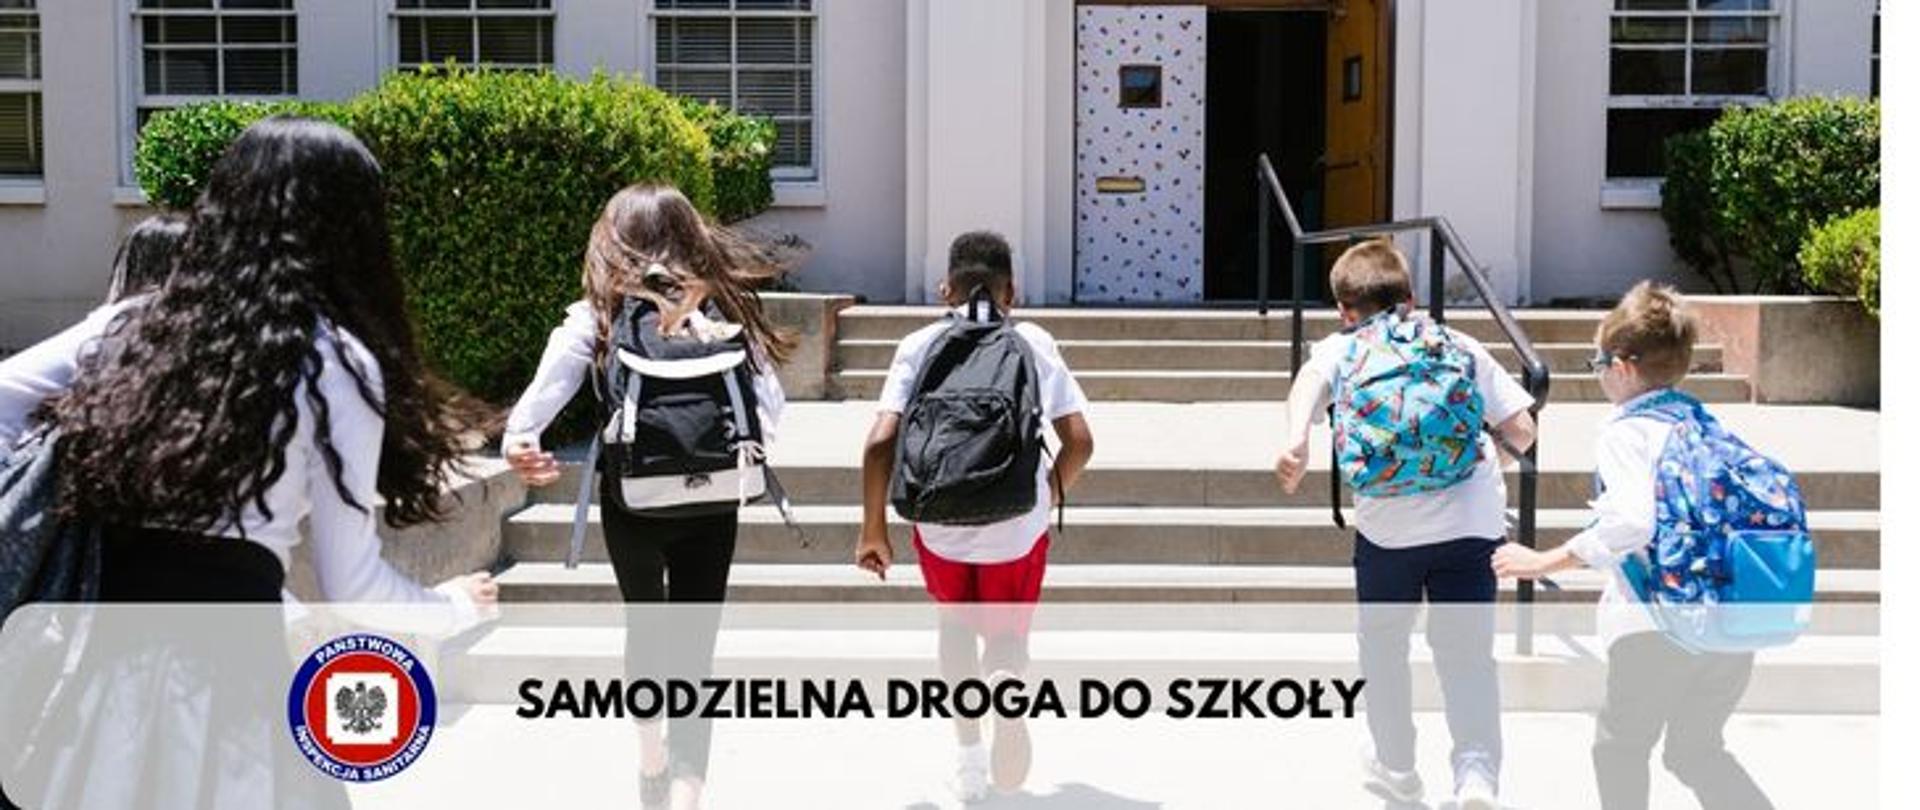 Zdjęcie przedstawia piątkę dzieci idących w kierunku wejścia szkoły na dole logo Państwowej Inspekcji Sanitarnej i napis SAMODZIELNA DROGA DO SZKOŁY